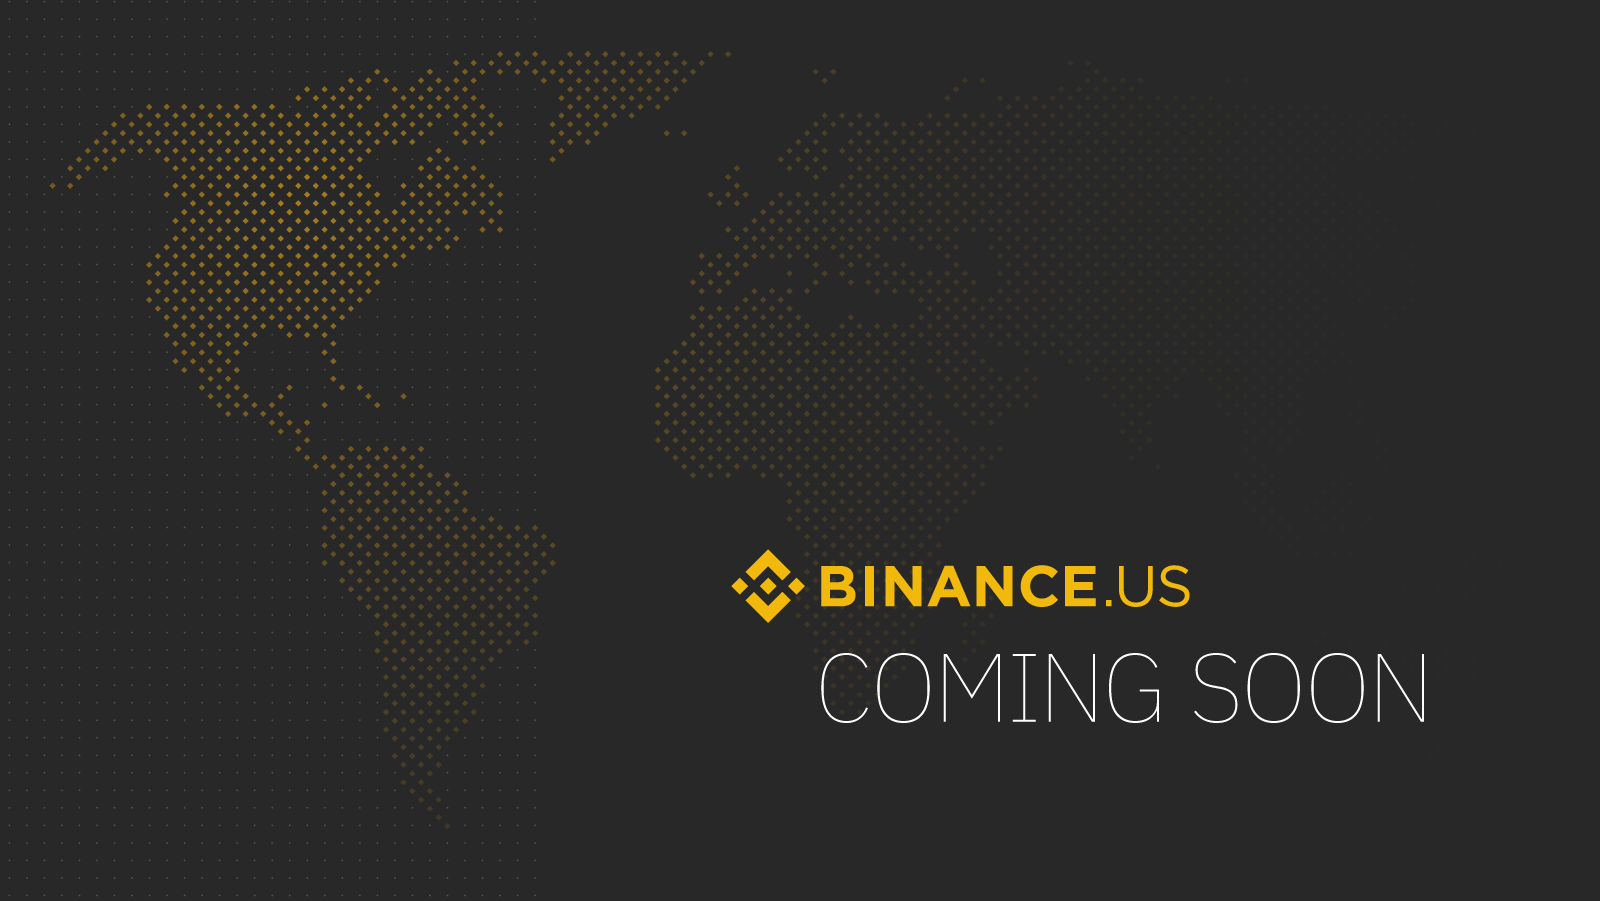 منصة Binance تستعد لإطلاق منصتها الأمريكية - تقني نت العملات الرقمية